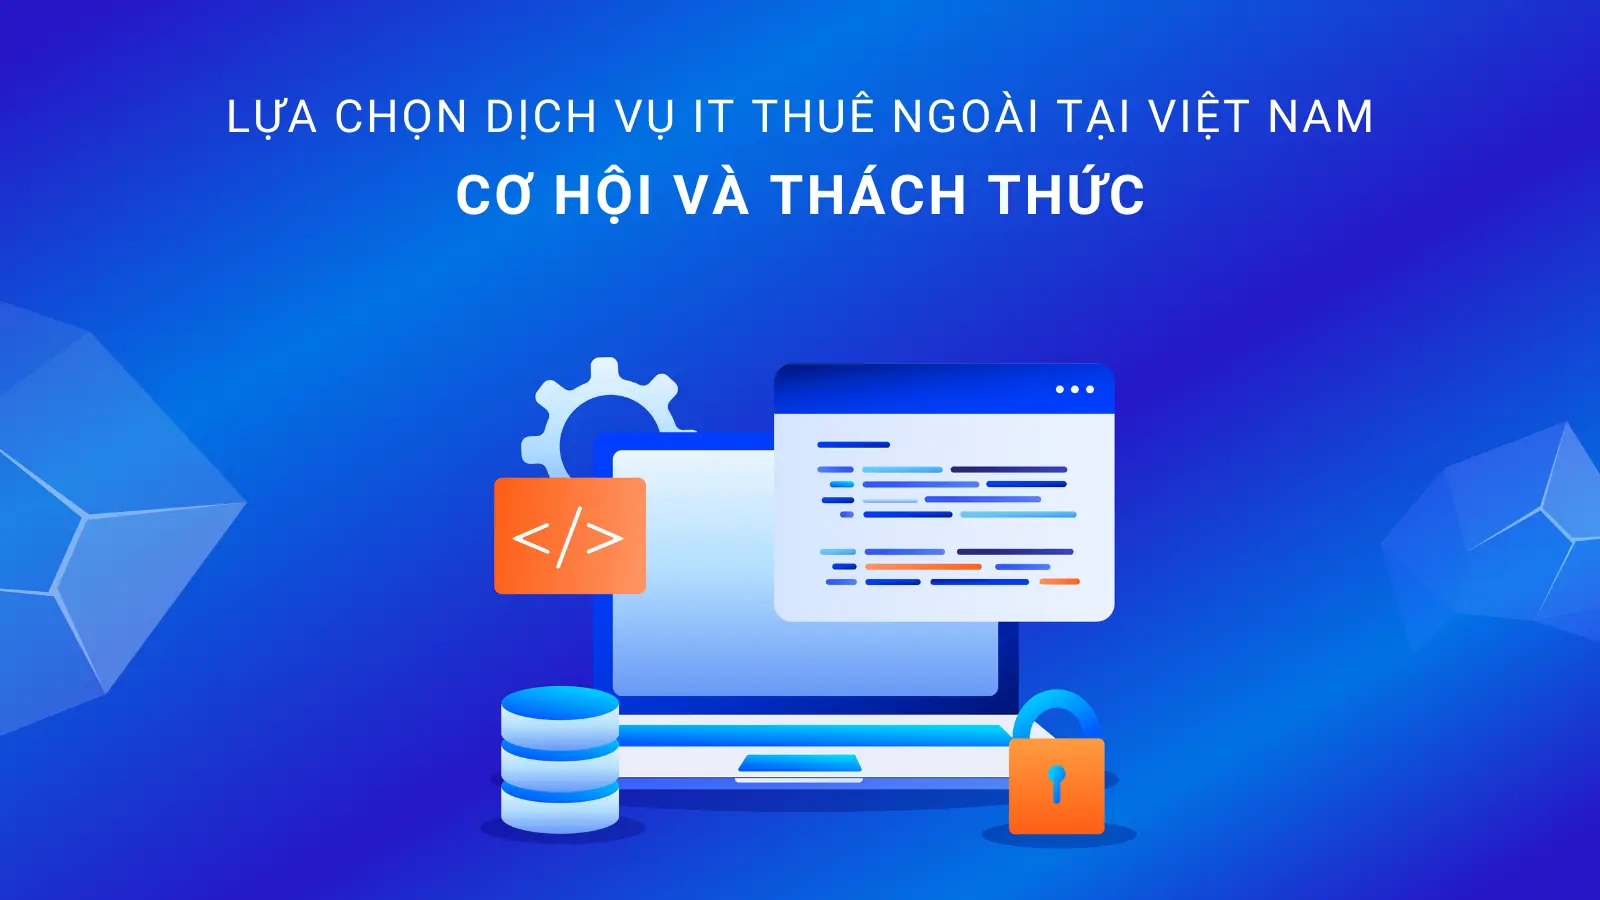 Dịch vụ IT Thuê ngoài tại Việt Nam Cơ Hội và Thách Thức